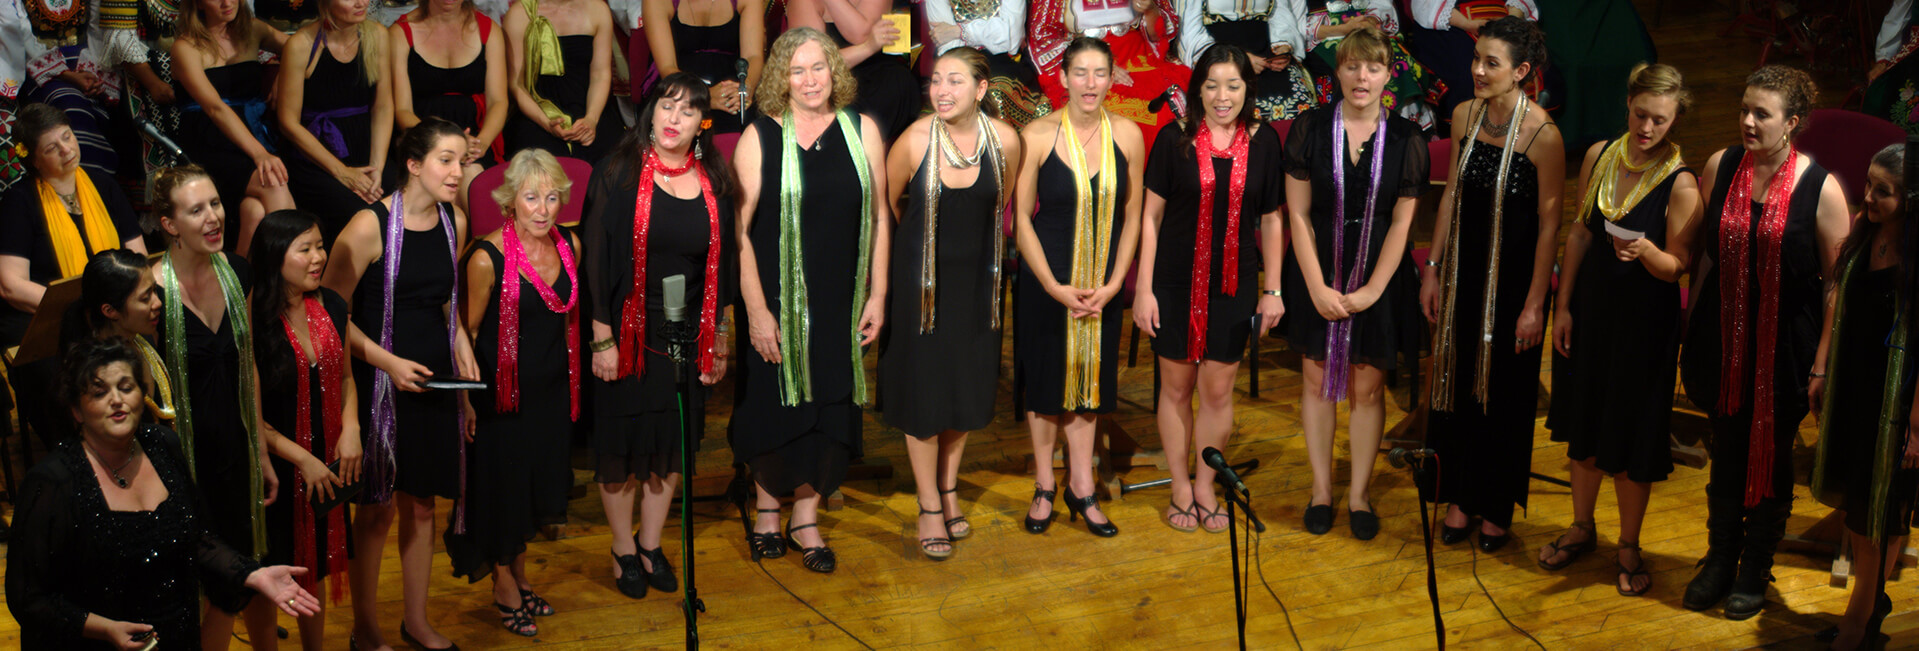 balkan_womens_choir_in_bulgaria_2010